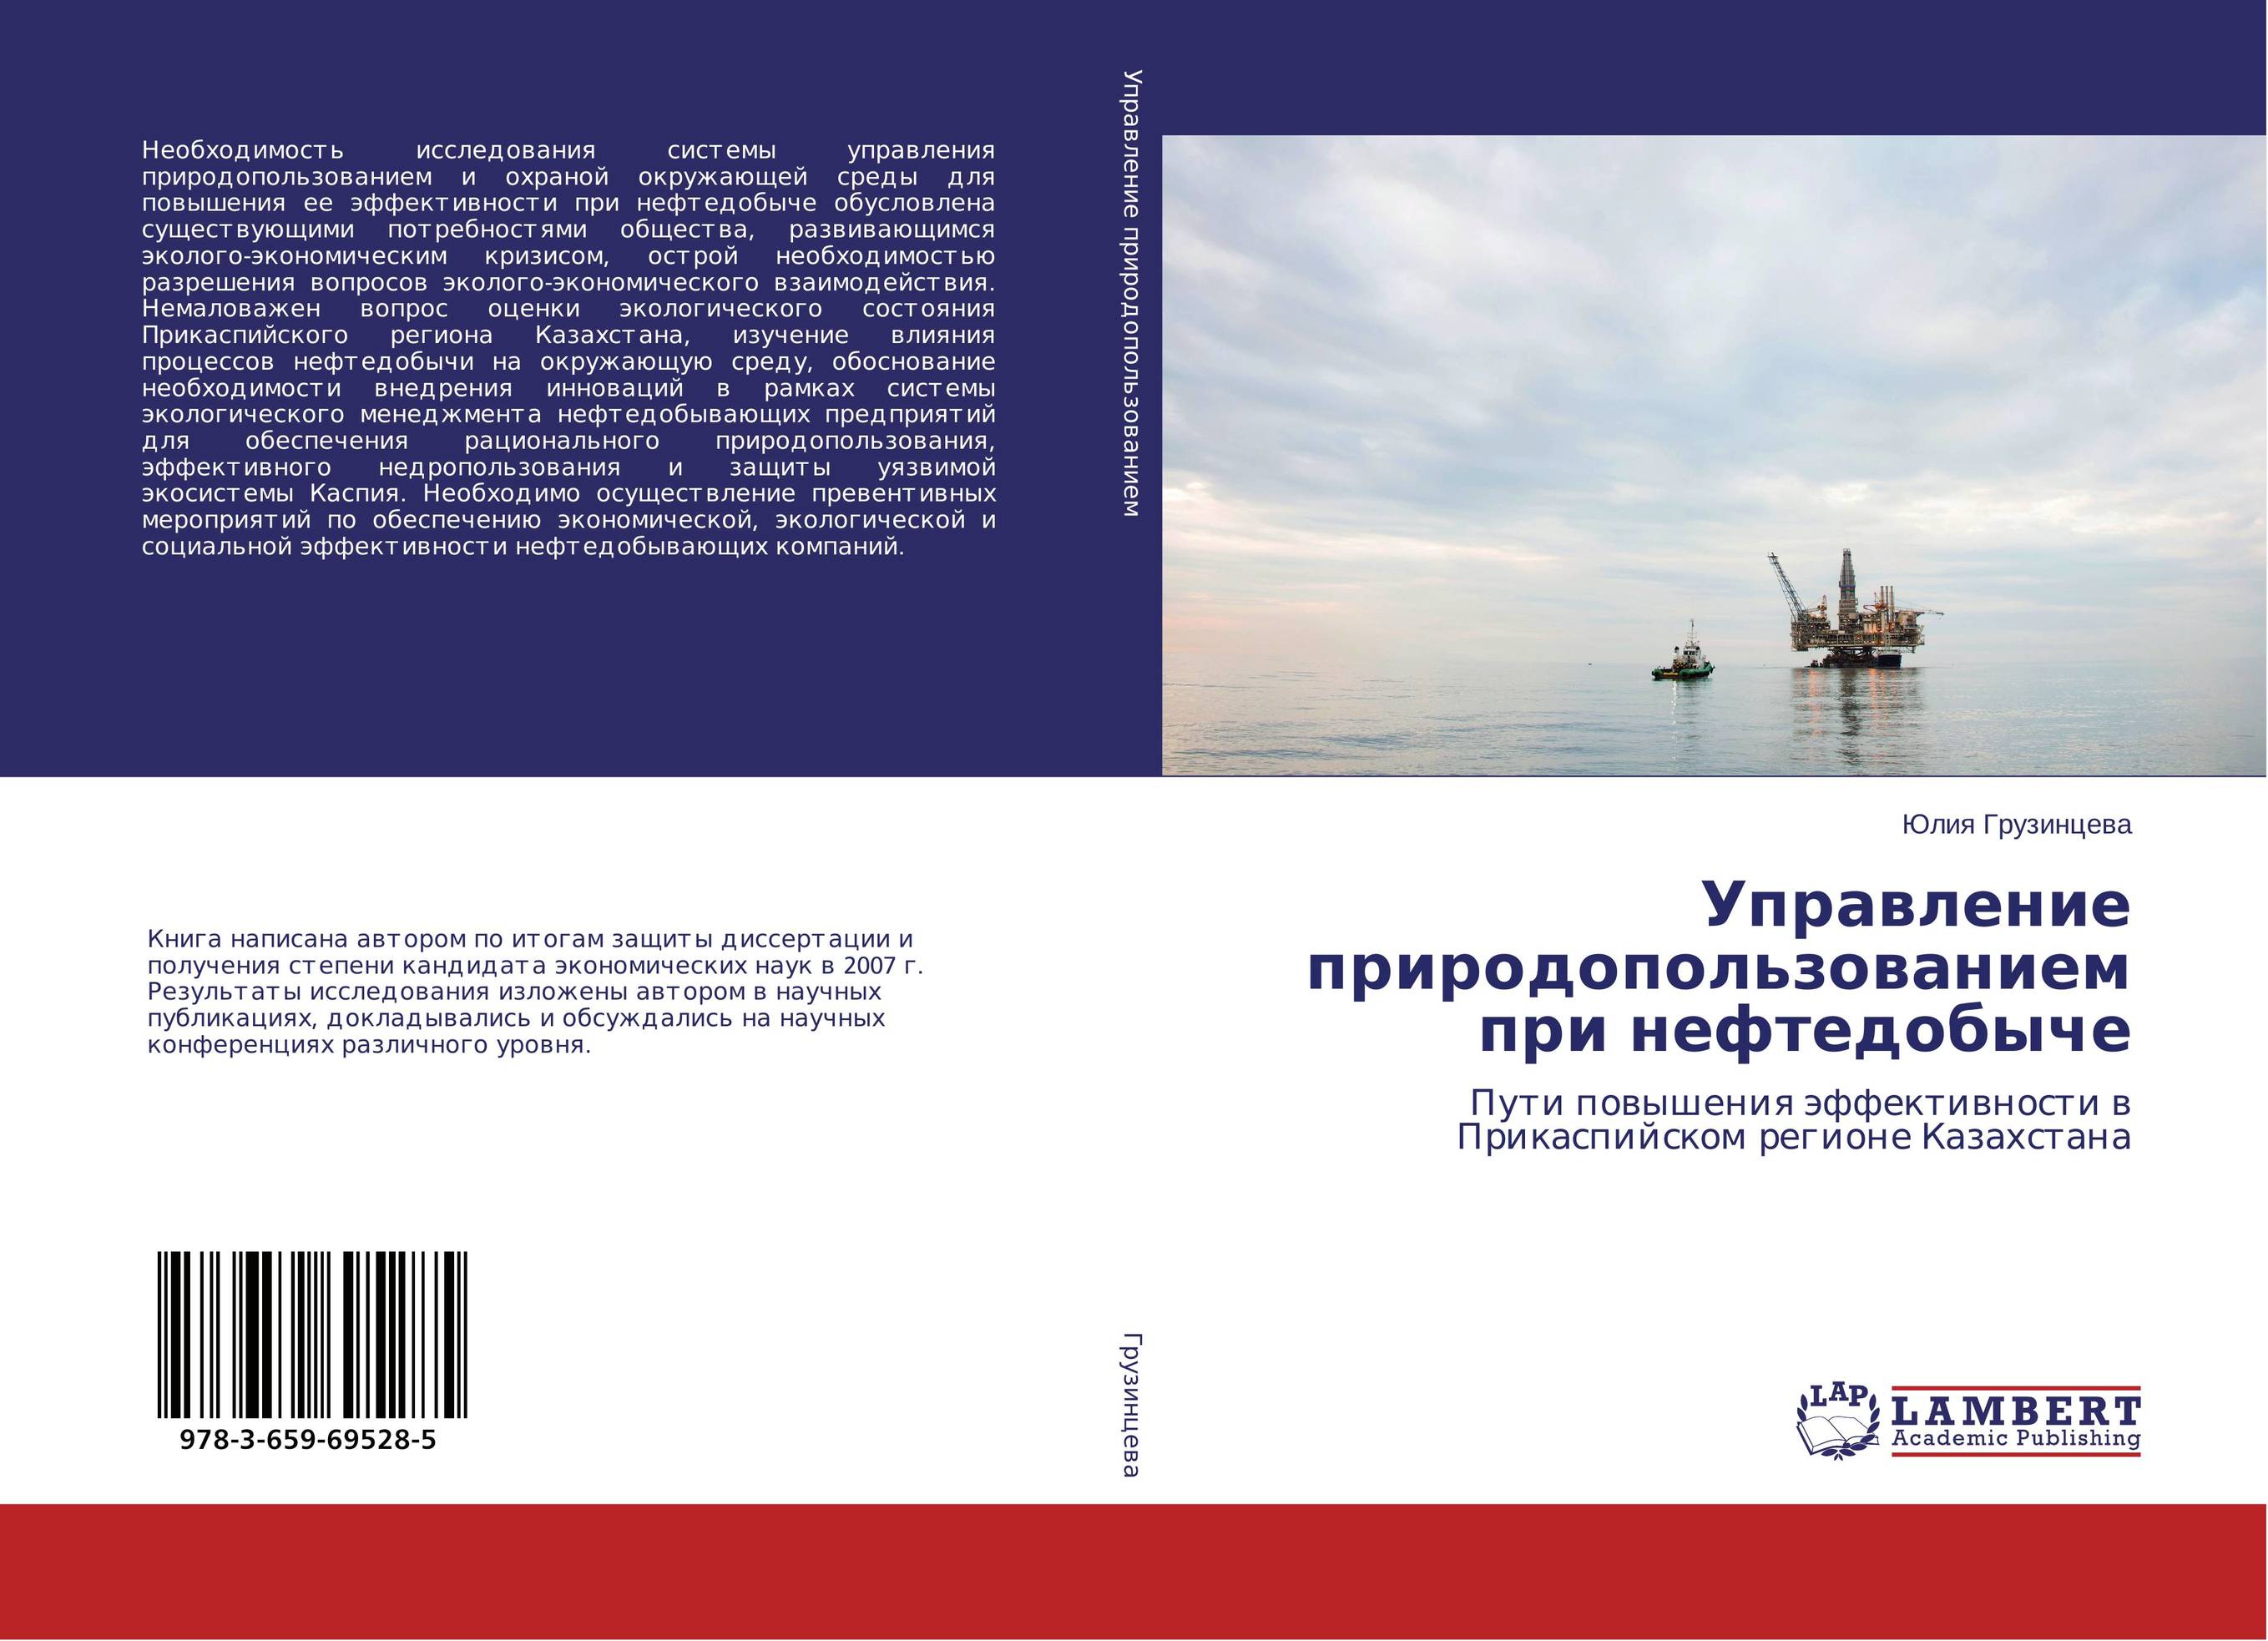 
        Управление природопользованием при нефтедобыче. Пути повышения эффективности в Прикаспийском регионе Казахстана.
      